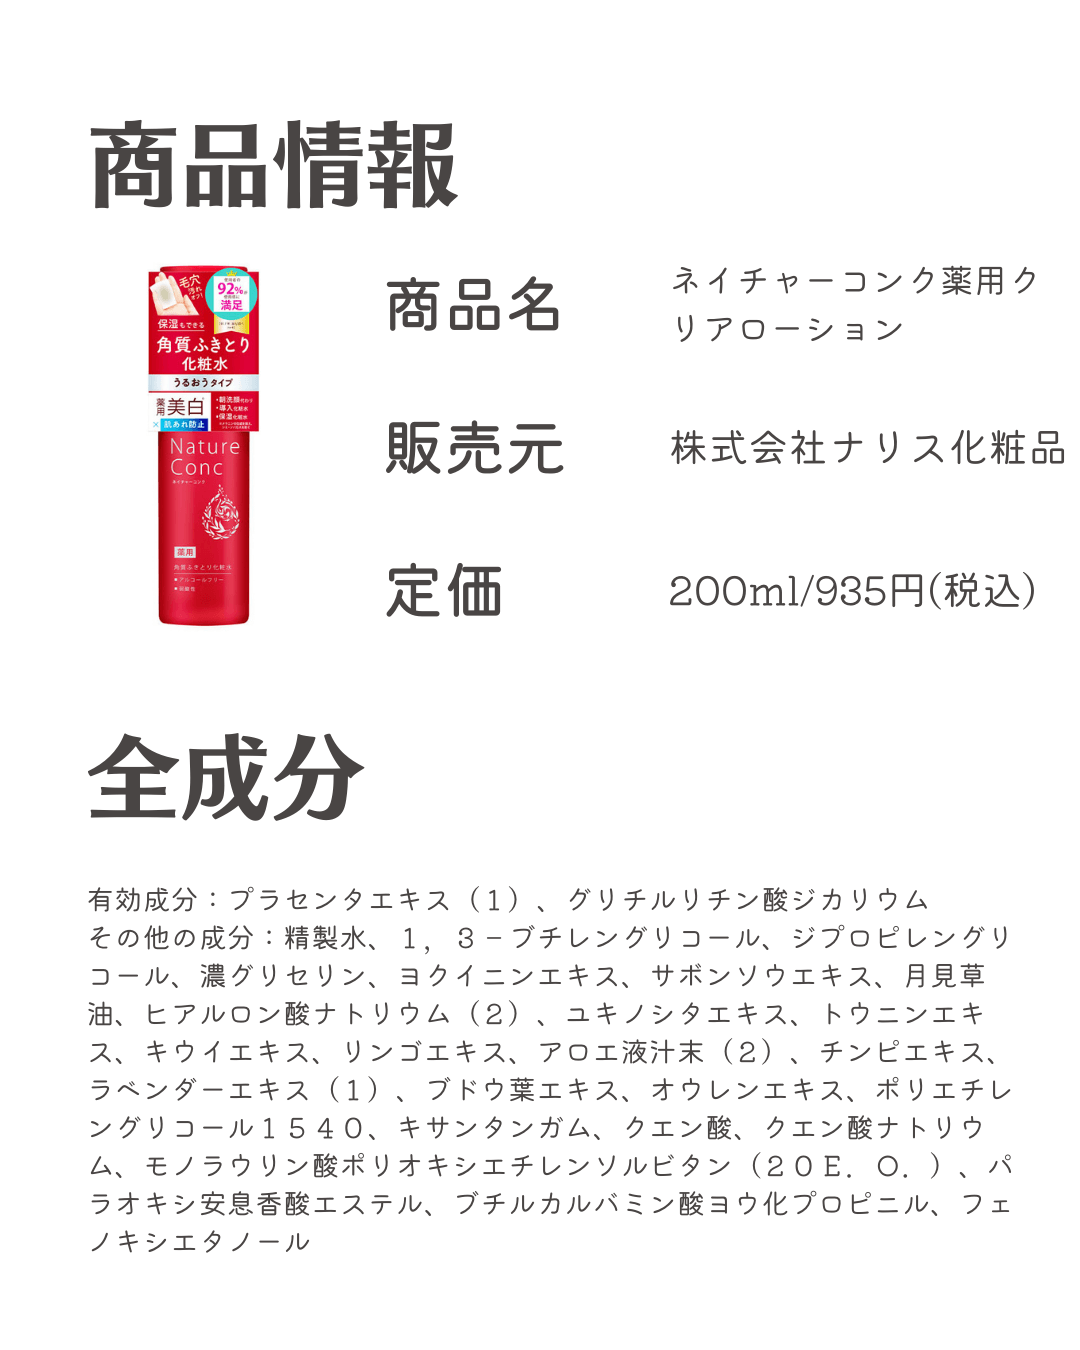 207円 【69%OFF!】 ネイチャーコンク薬用クリアローション